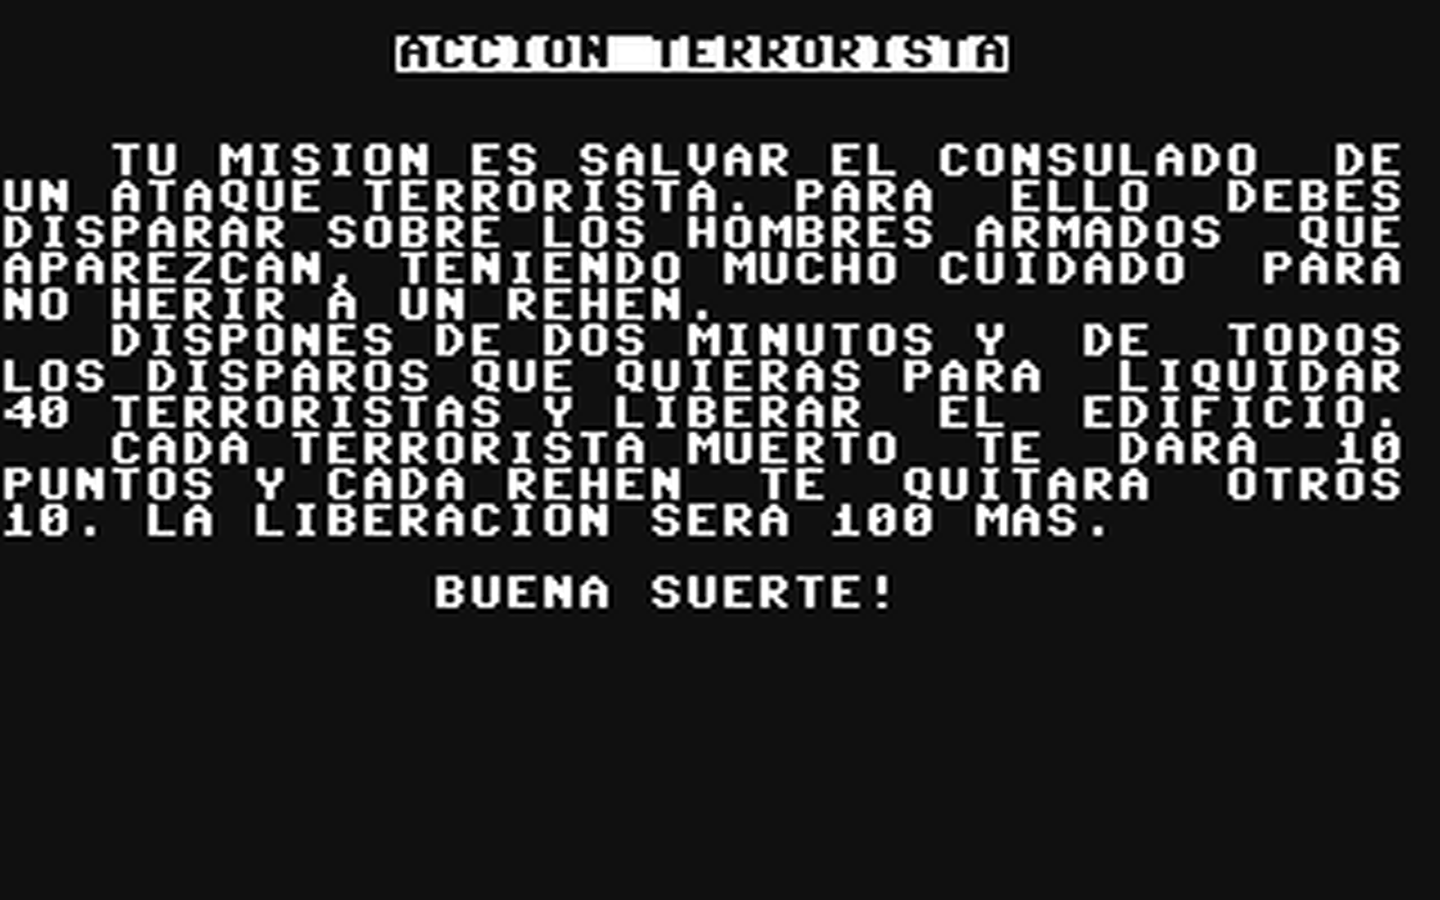 C64 GameBase Terrorista Ediciones_Ingelek/Tu_Micro_Commodore 1986